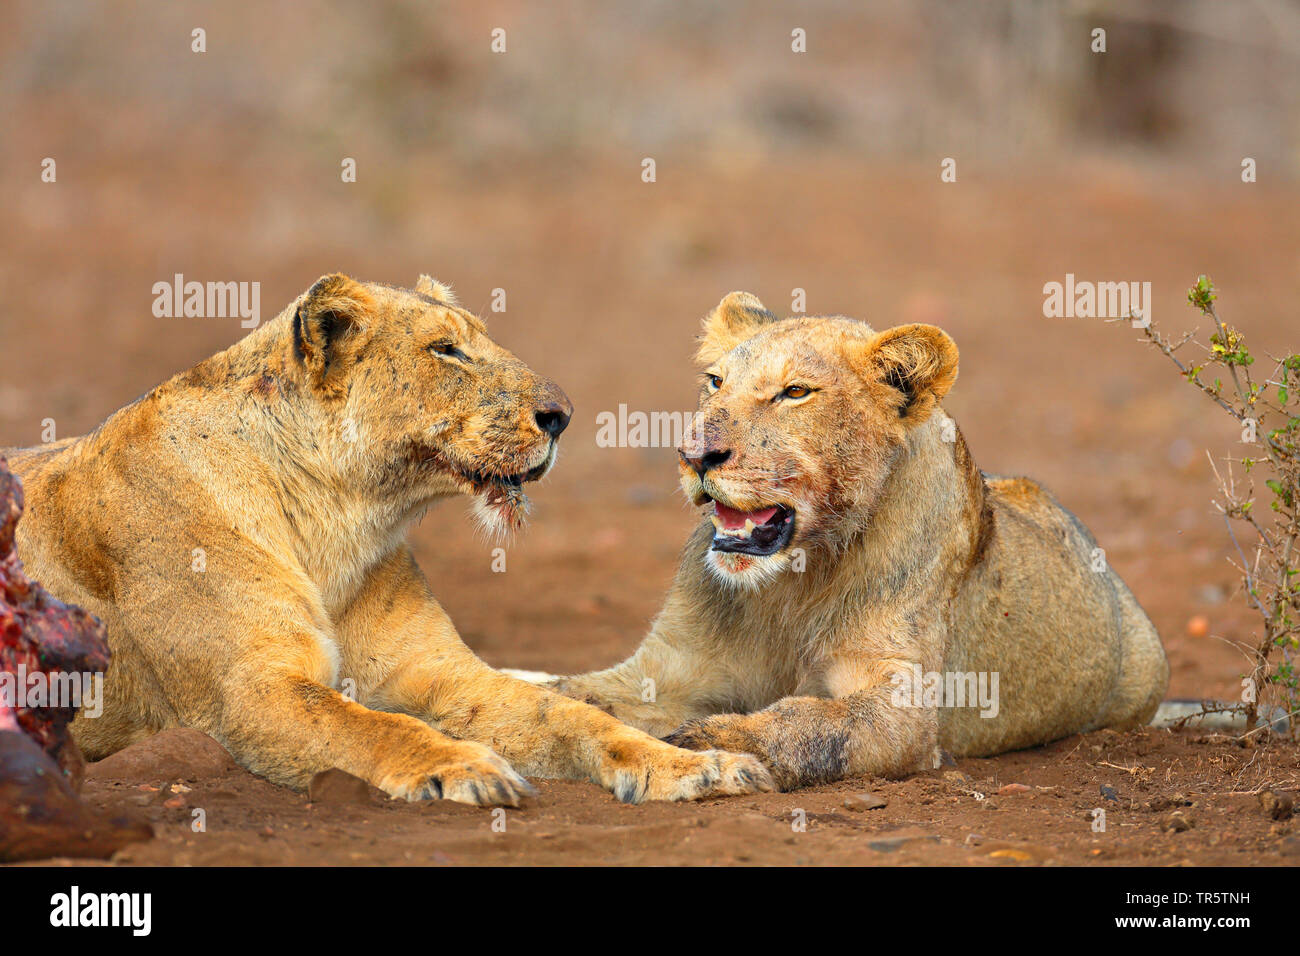 Lion (Panthera leo), deux jeunes lions se trouvant à la tuer, Afrique du Sud, Mpumalanga, Kruger National Park Banque D'Images